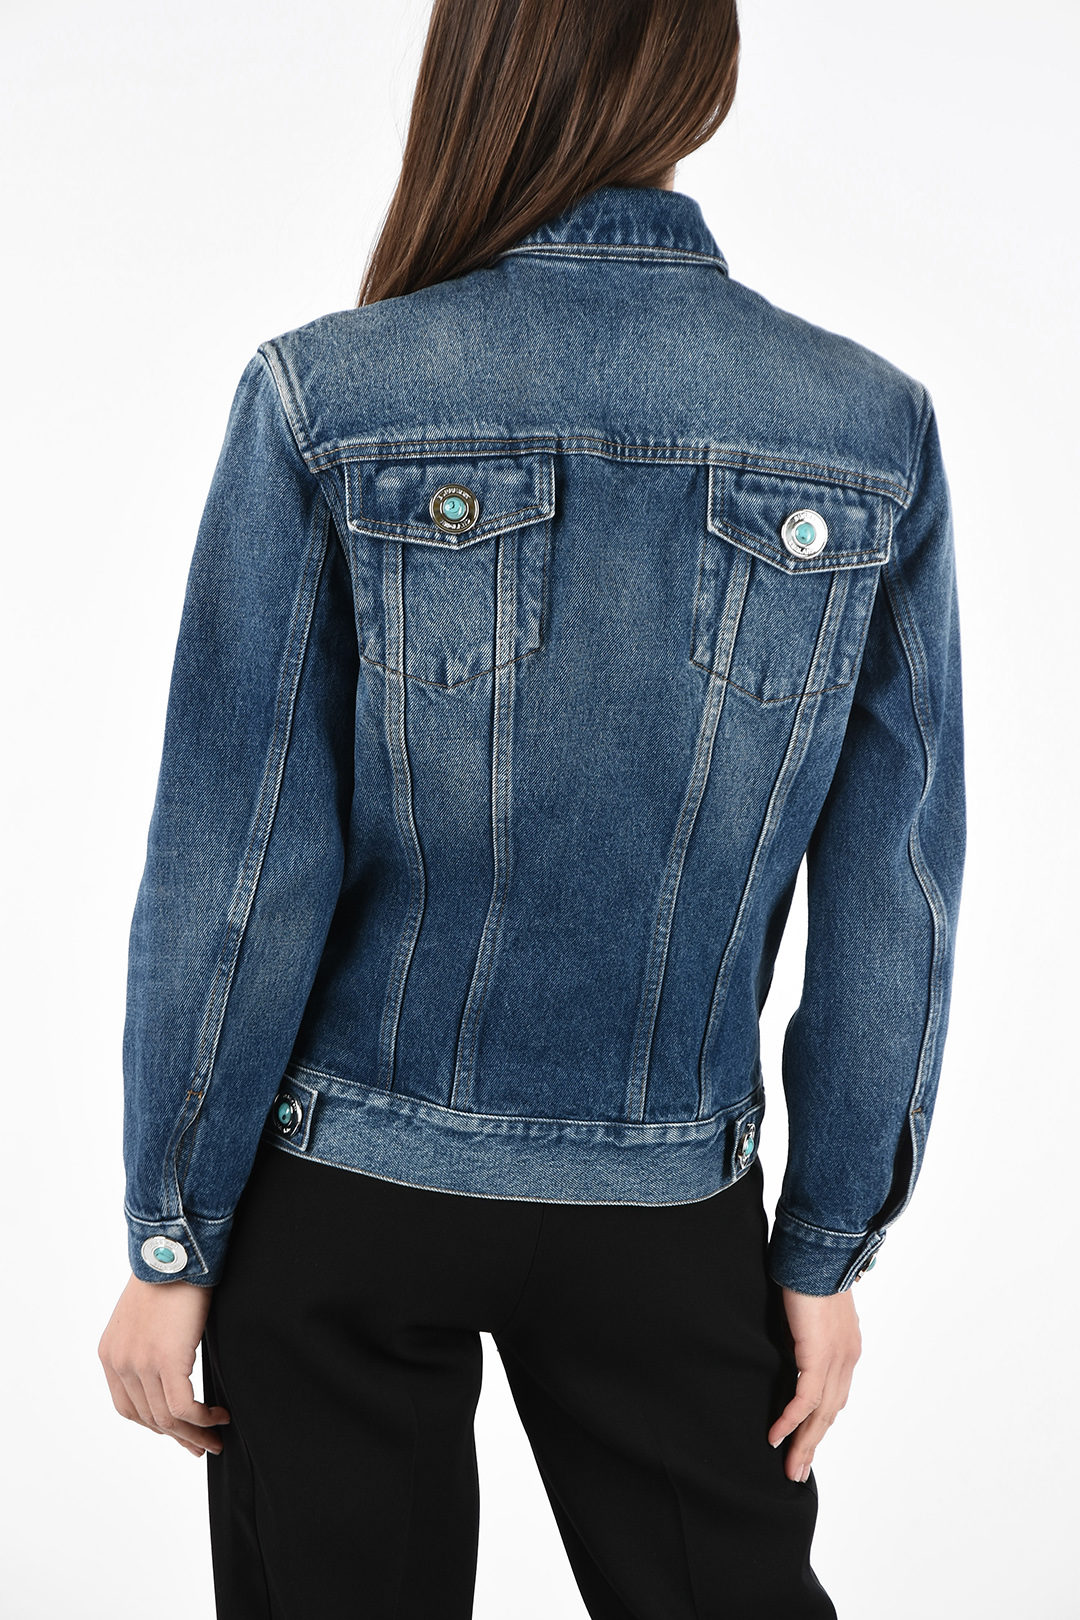 Actualizar 31+ imagen burberry jean jacket womens